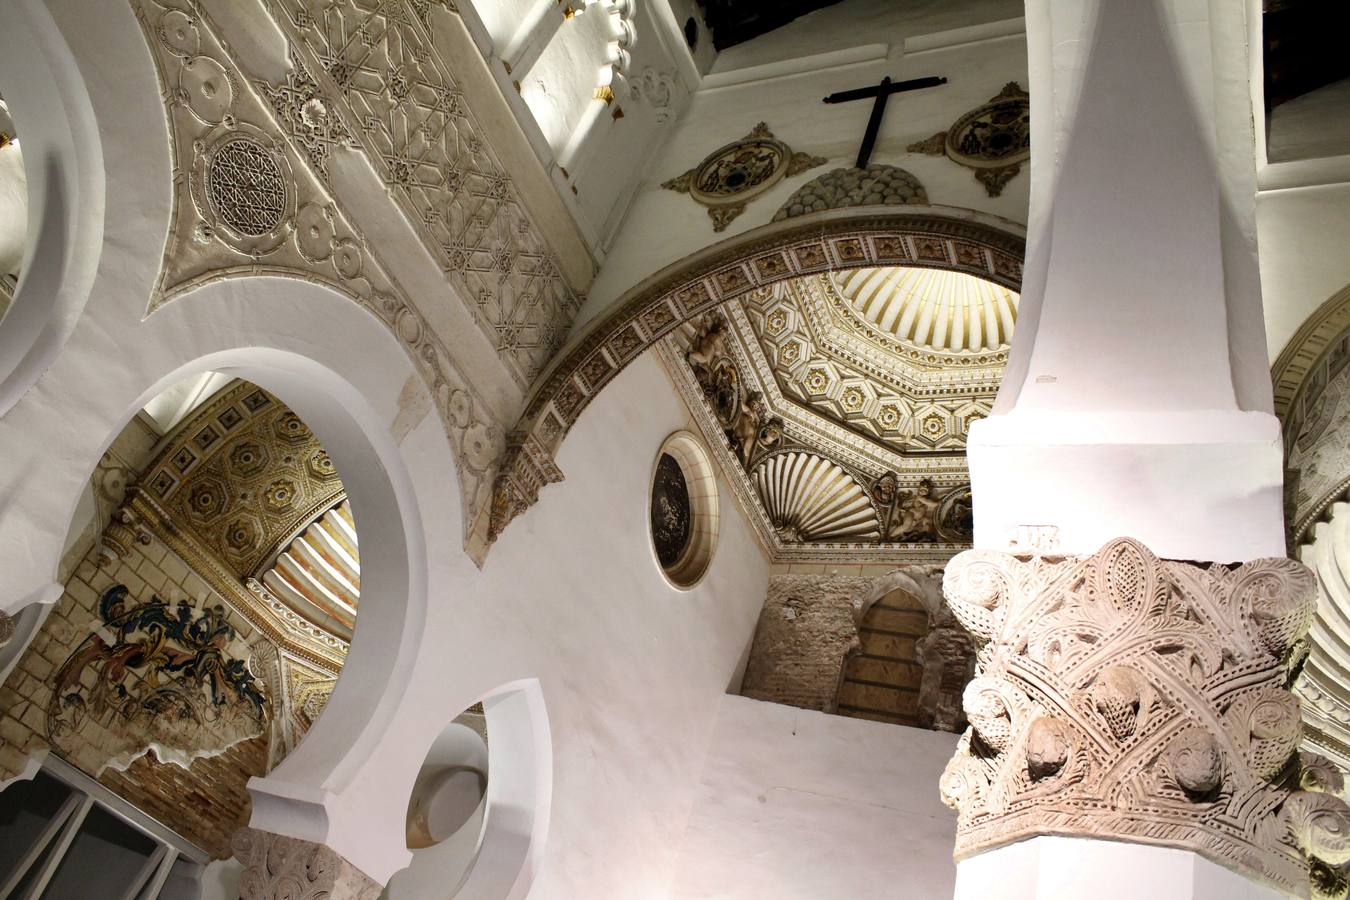 La sinagoga de Santa María La Blanca estrena iluminación